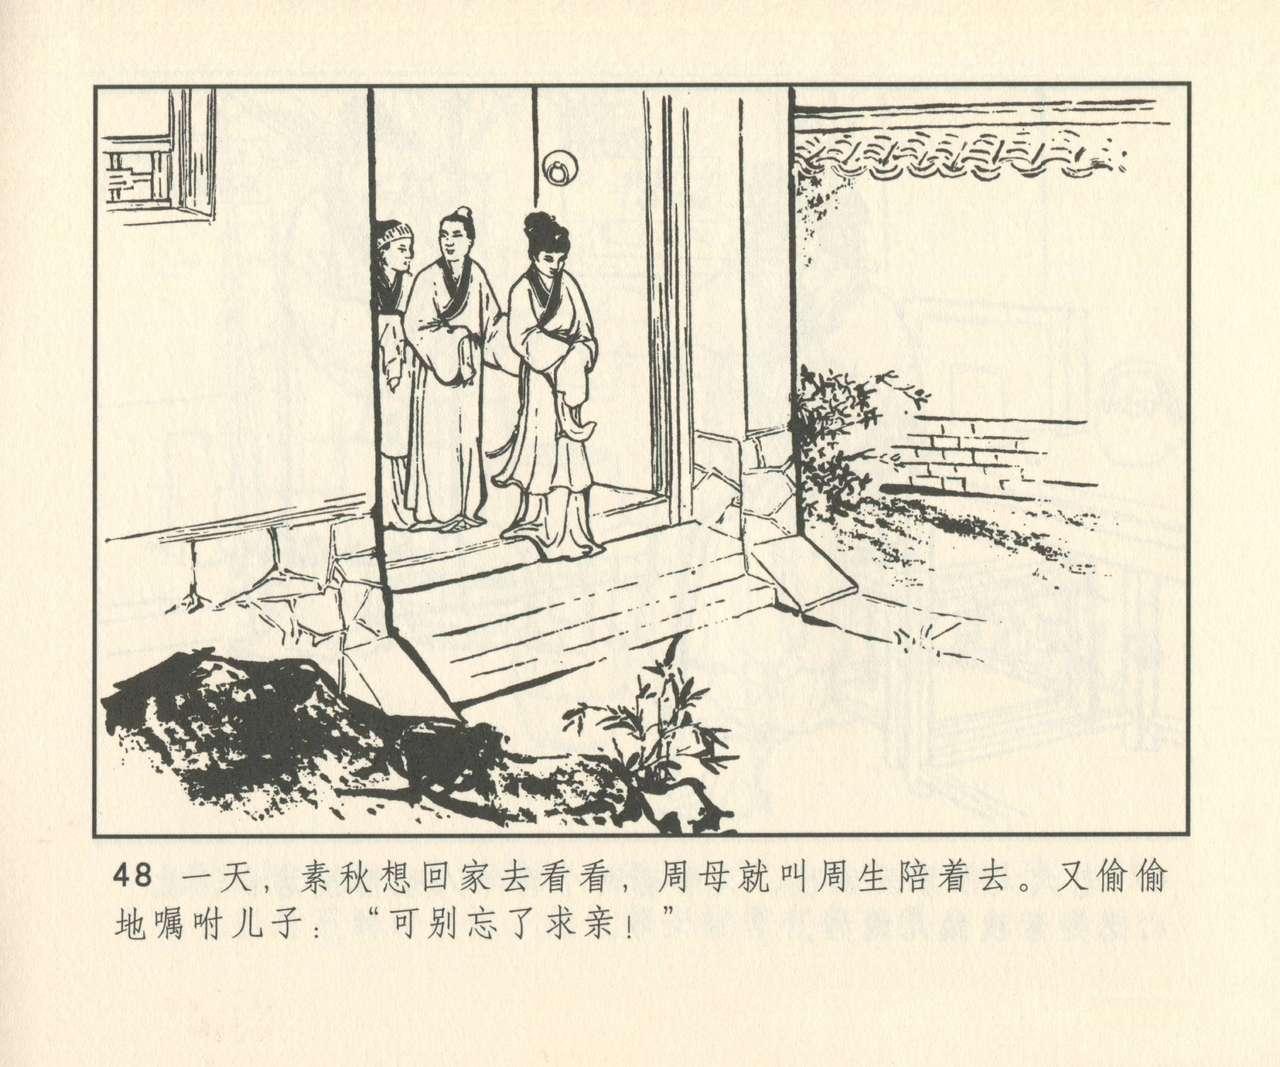 聊斋志异 张玮等绘 天津人民美术出版社 卷二十一 ~ 三十 328